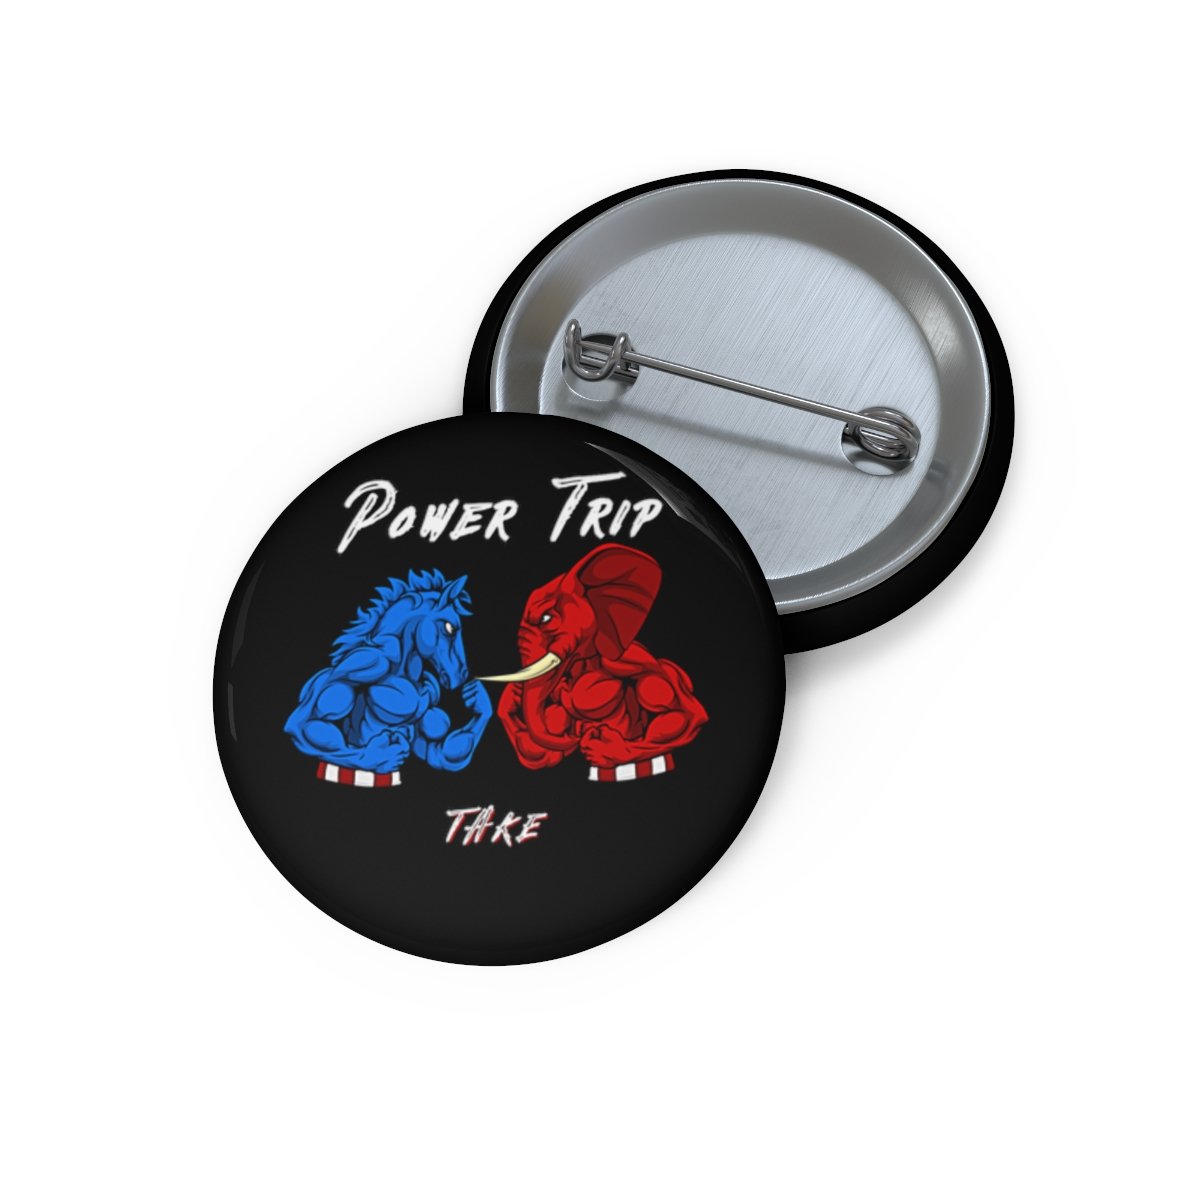 Take – Power Trip Pin Buttons